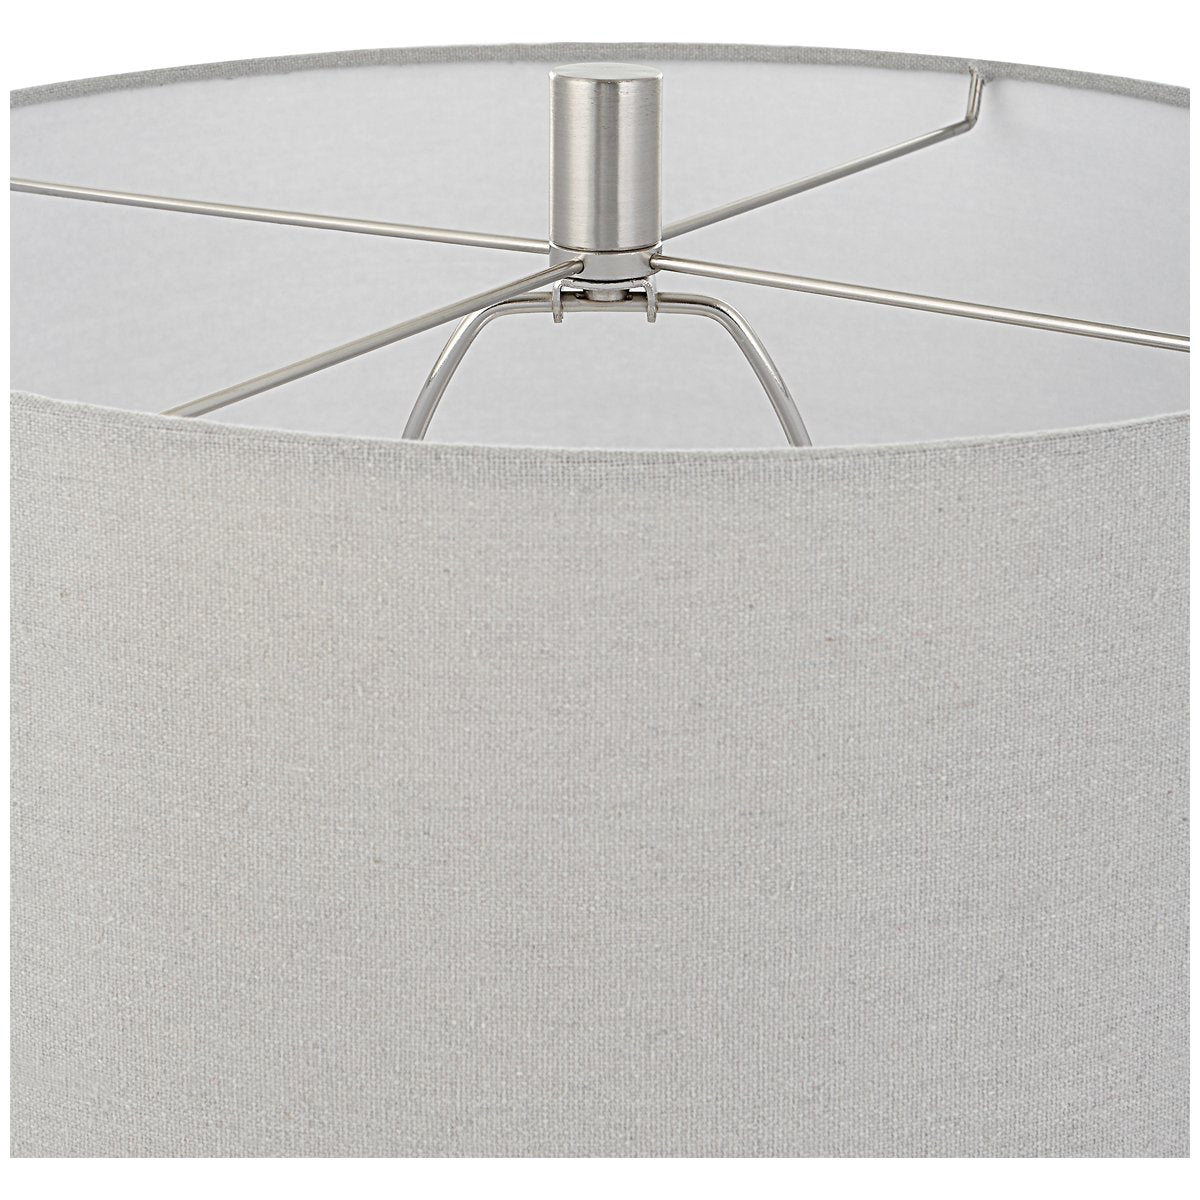 Uttermost Nettle Textured Table Lamp